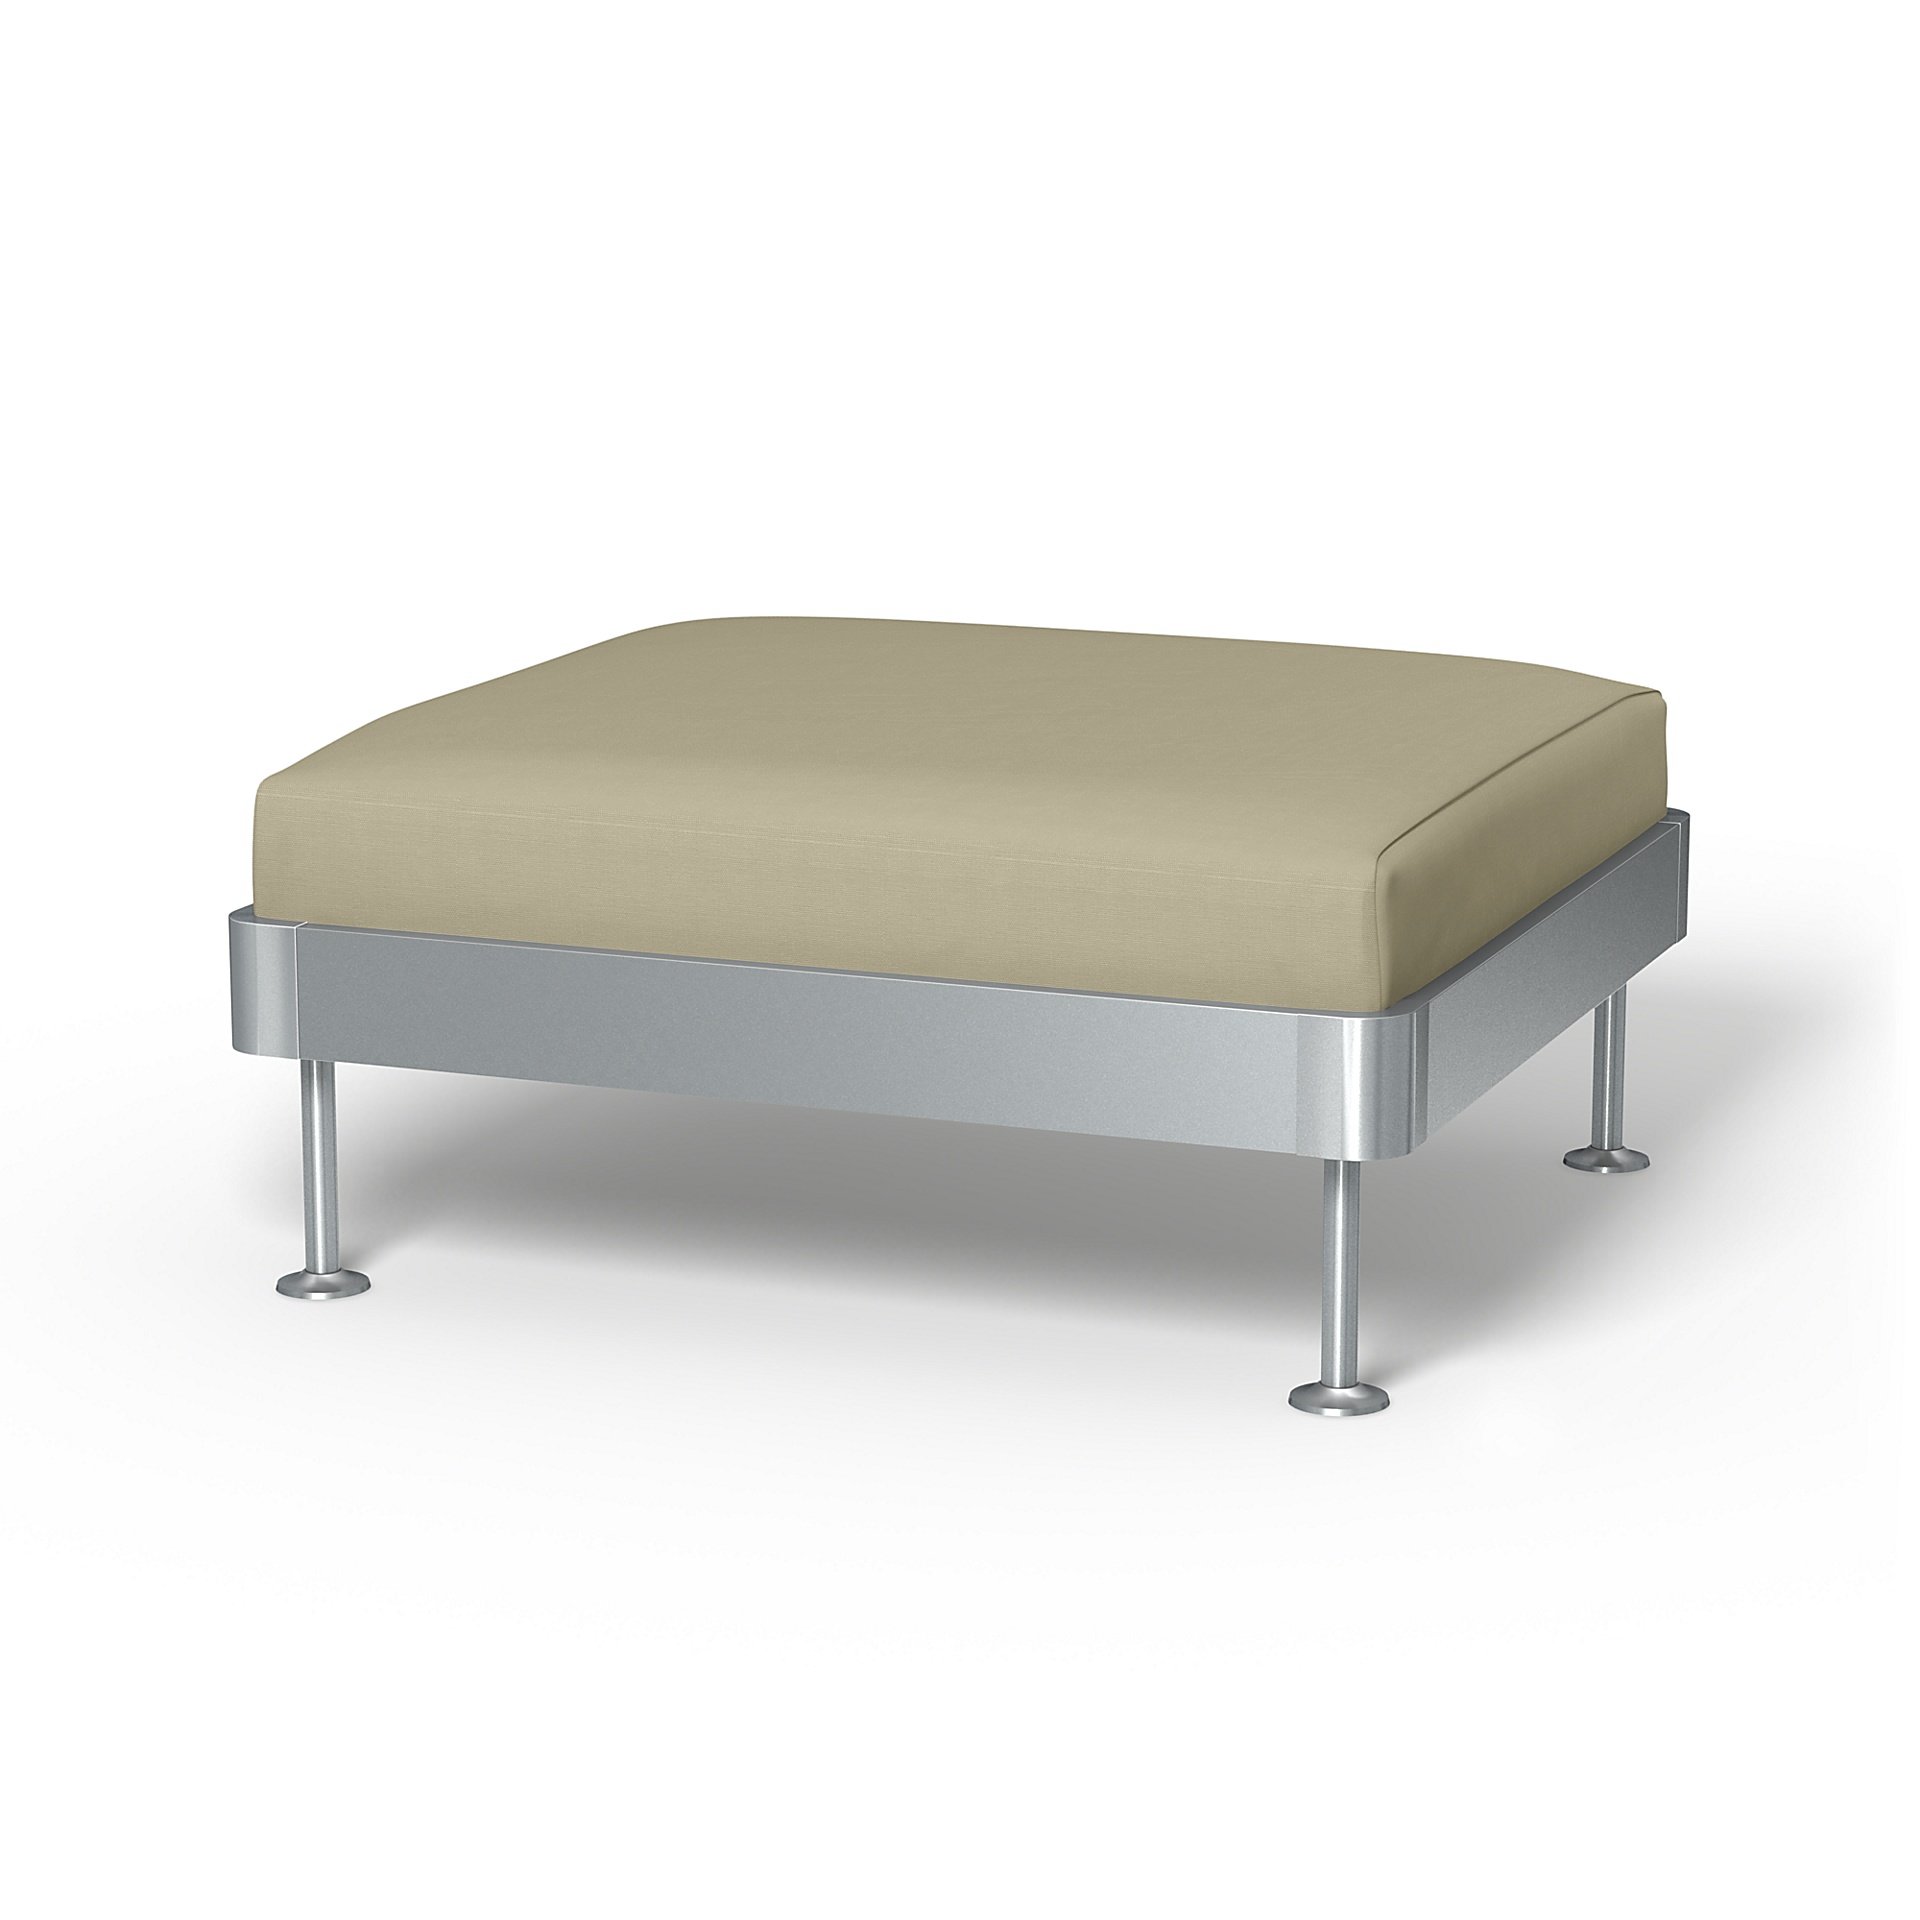 IKEA - Delaktig 1 Seat Platform Cover, Sand Beige, Cotton - Bemz